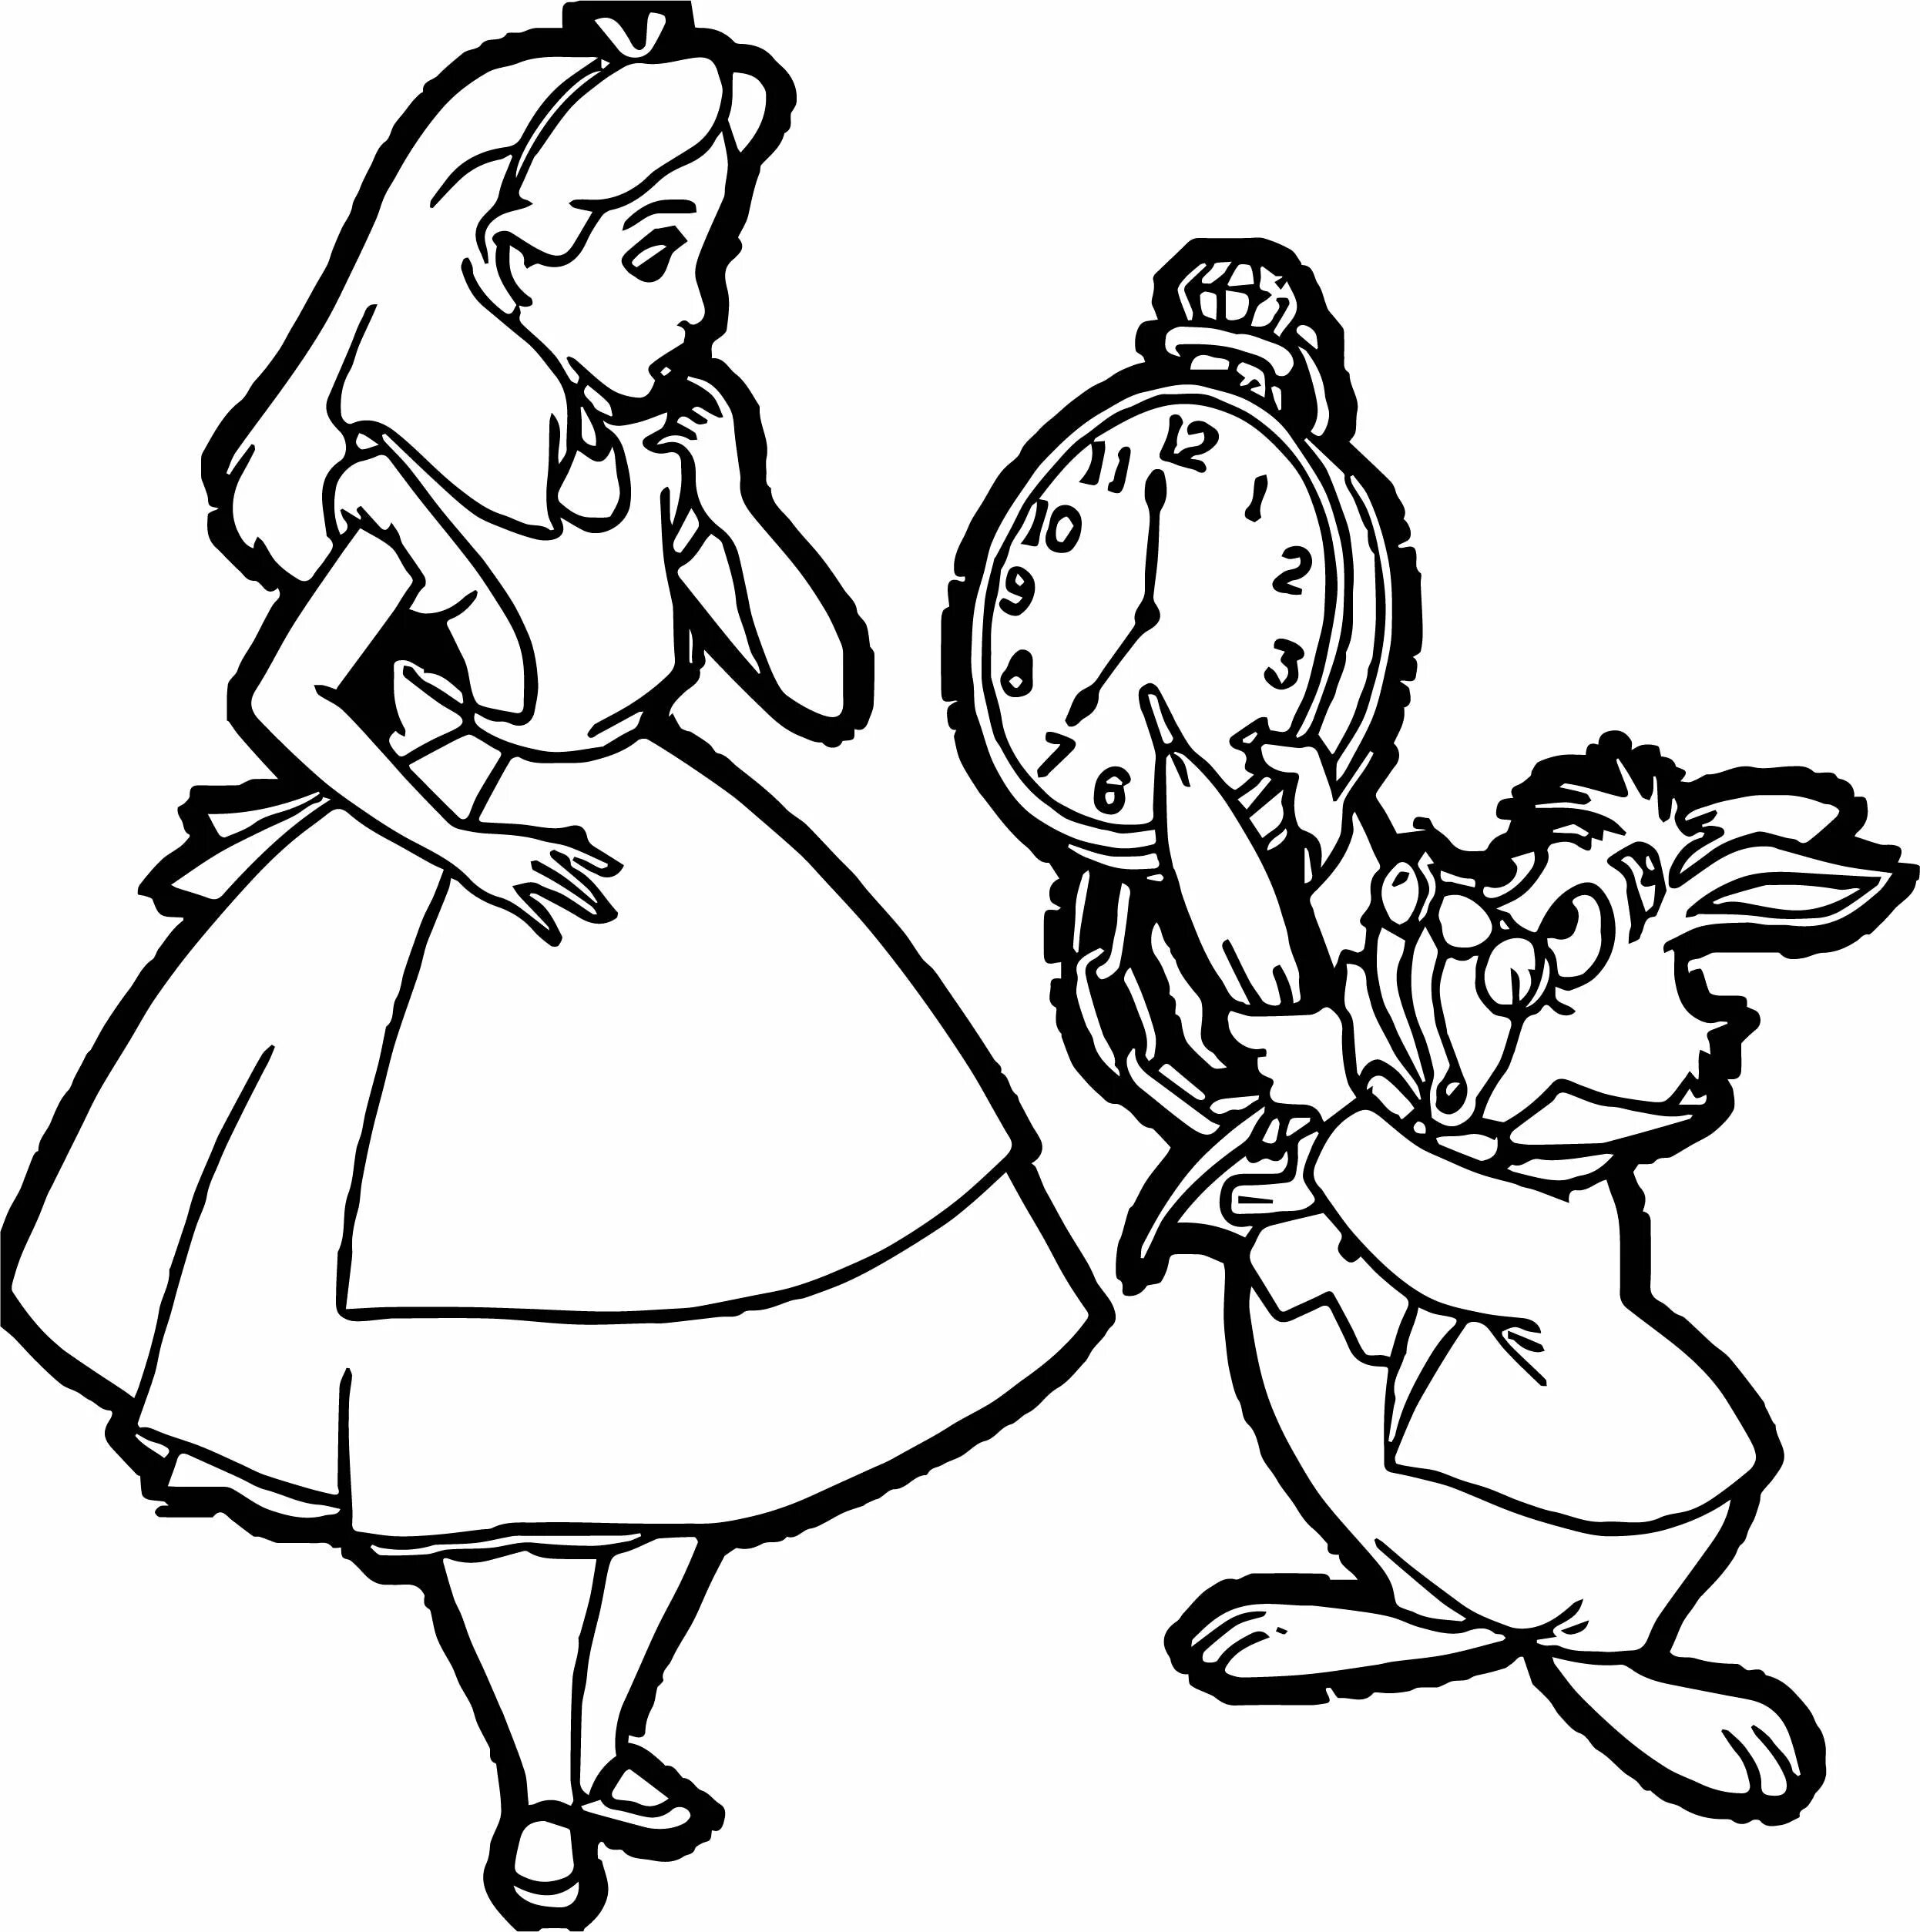 Нарисовать сказку алиса в стране чудес. Герои сказки Алиса в стране чудес раскраска. Рисунок к сказке Алиса в стране чудес карандашом. Алиса в Зазеркалье раскраска. Эпизод из сказки Алиса в стране чудес рисунок.